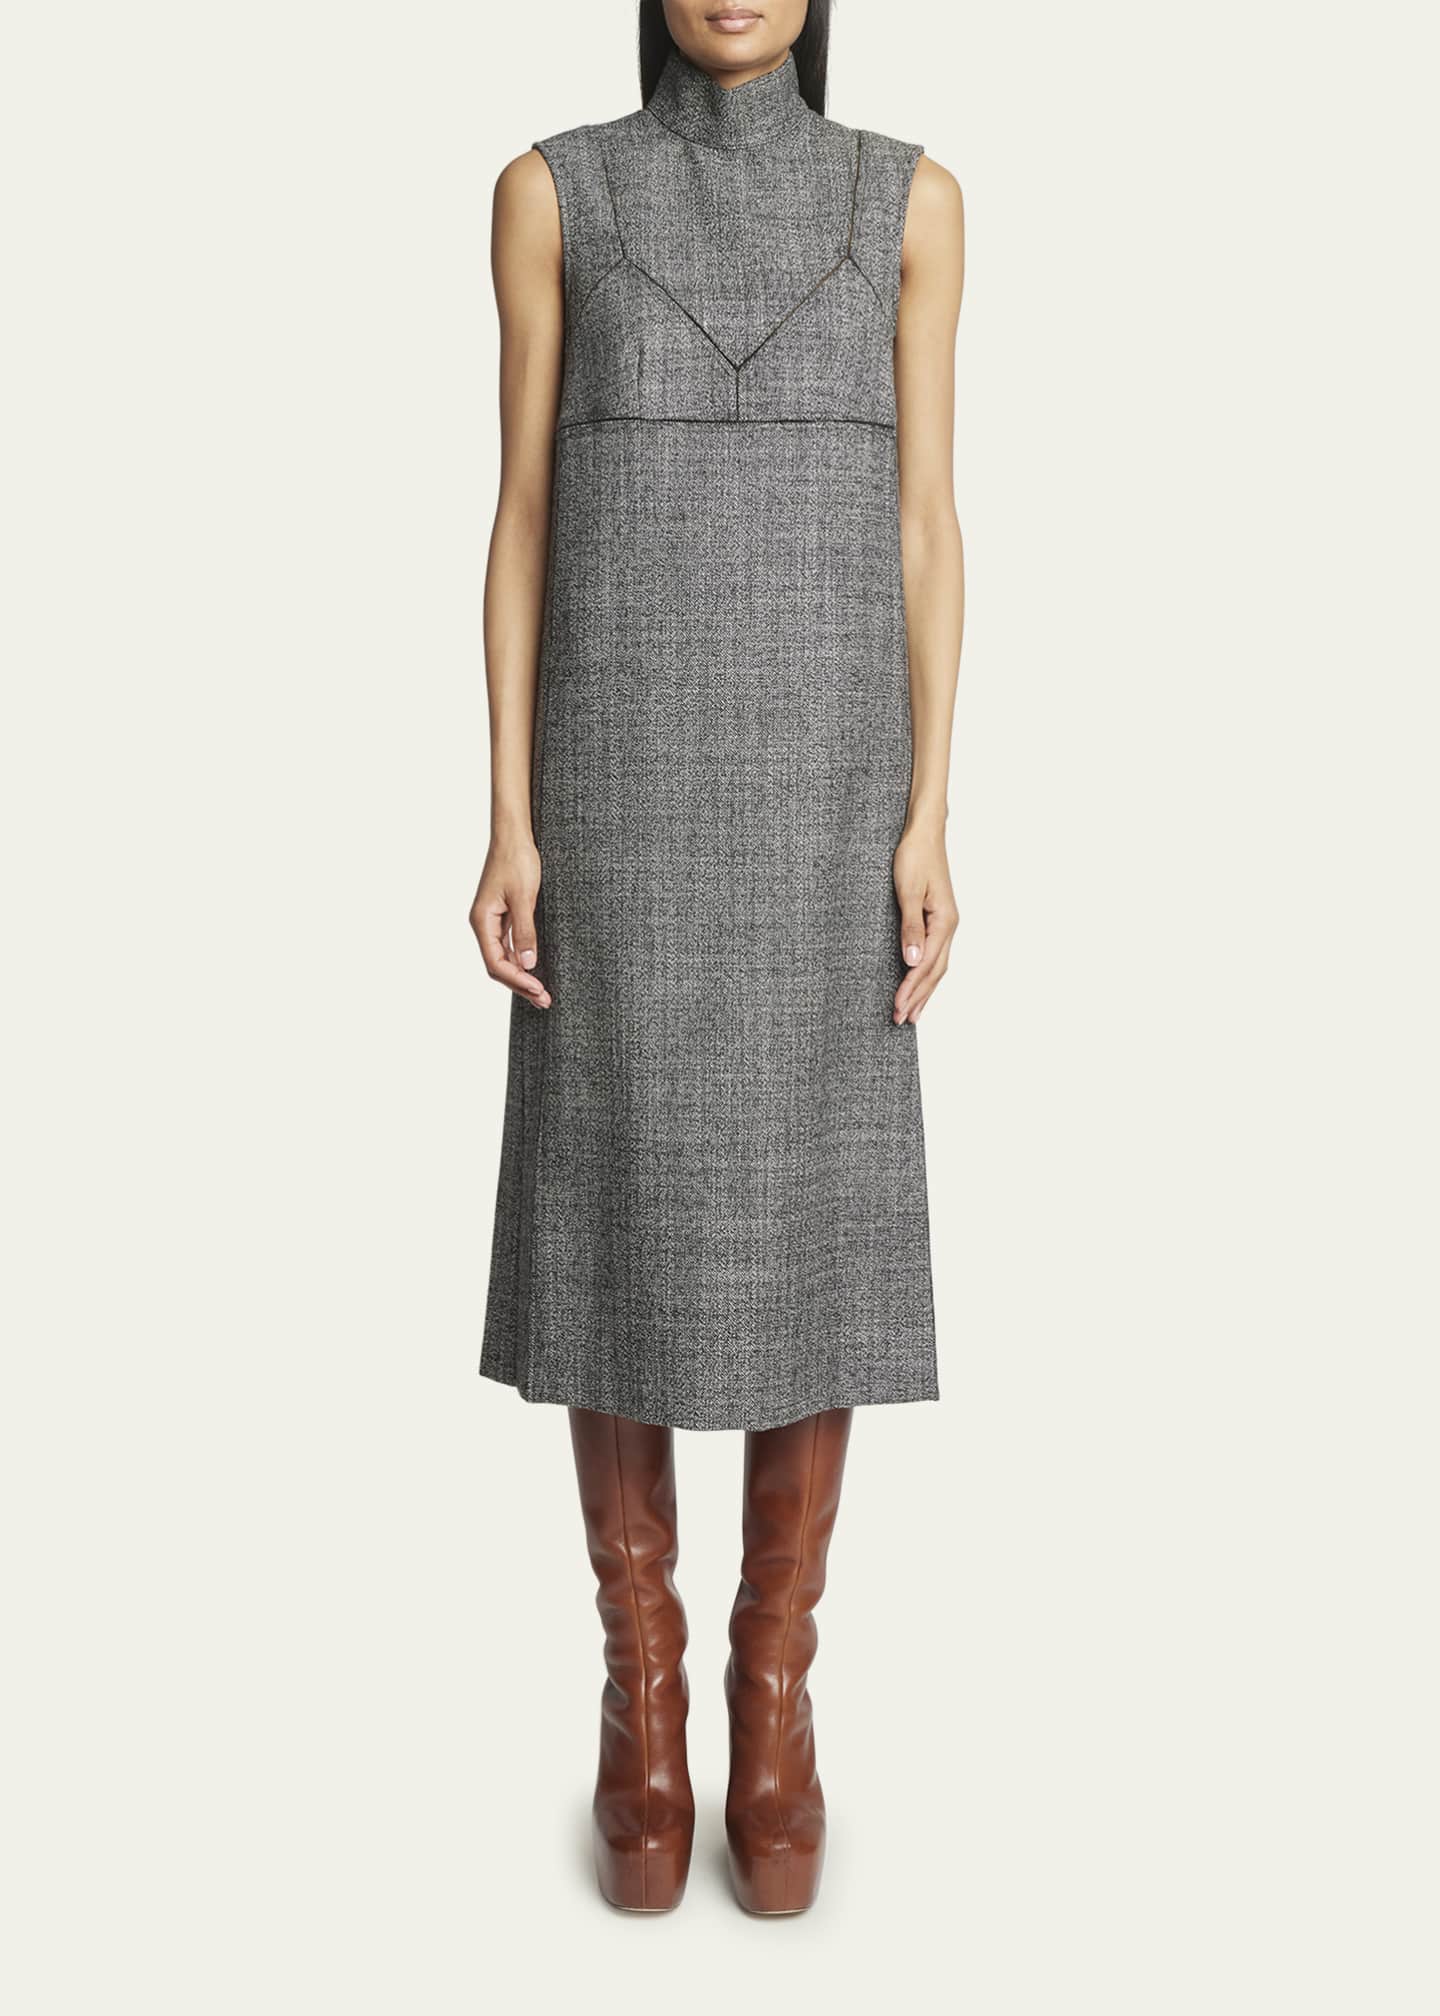 Dries Van Noten Daras Bra Cutout Wool Midi Dress - Bergdorf Goodman